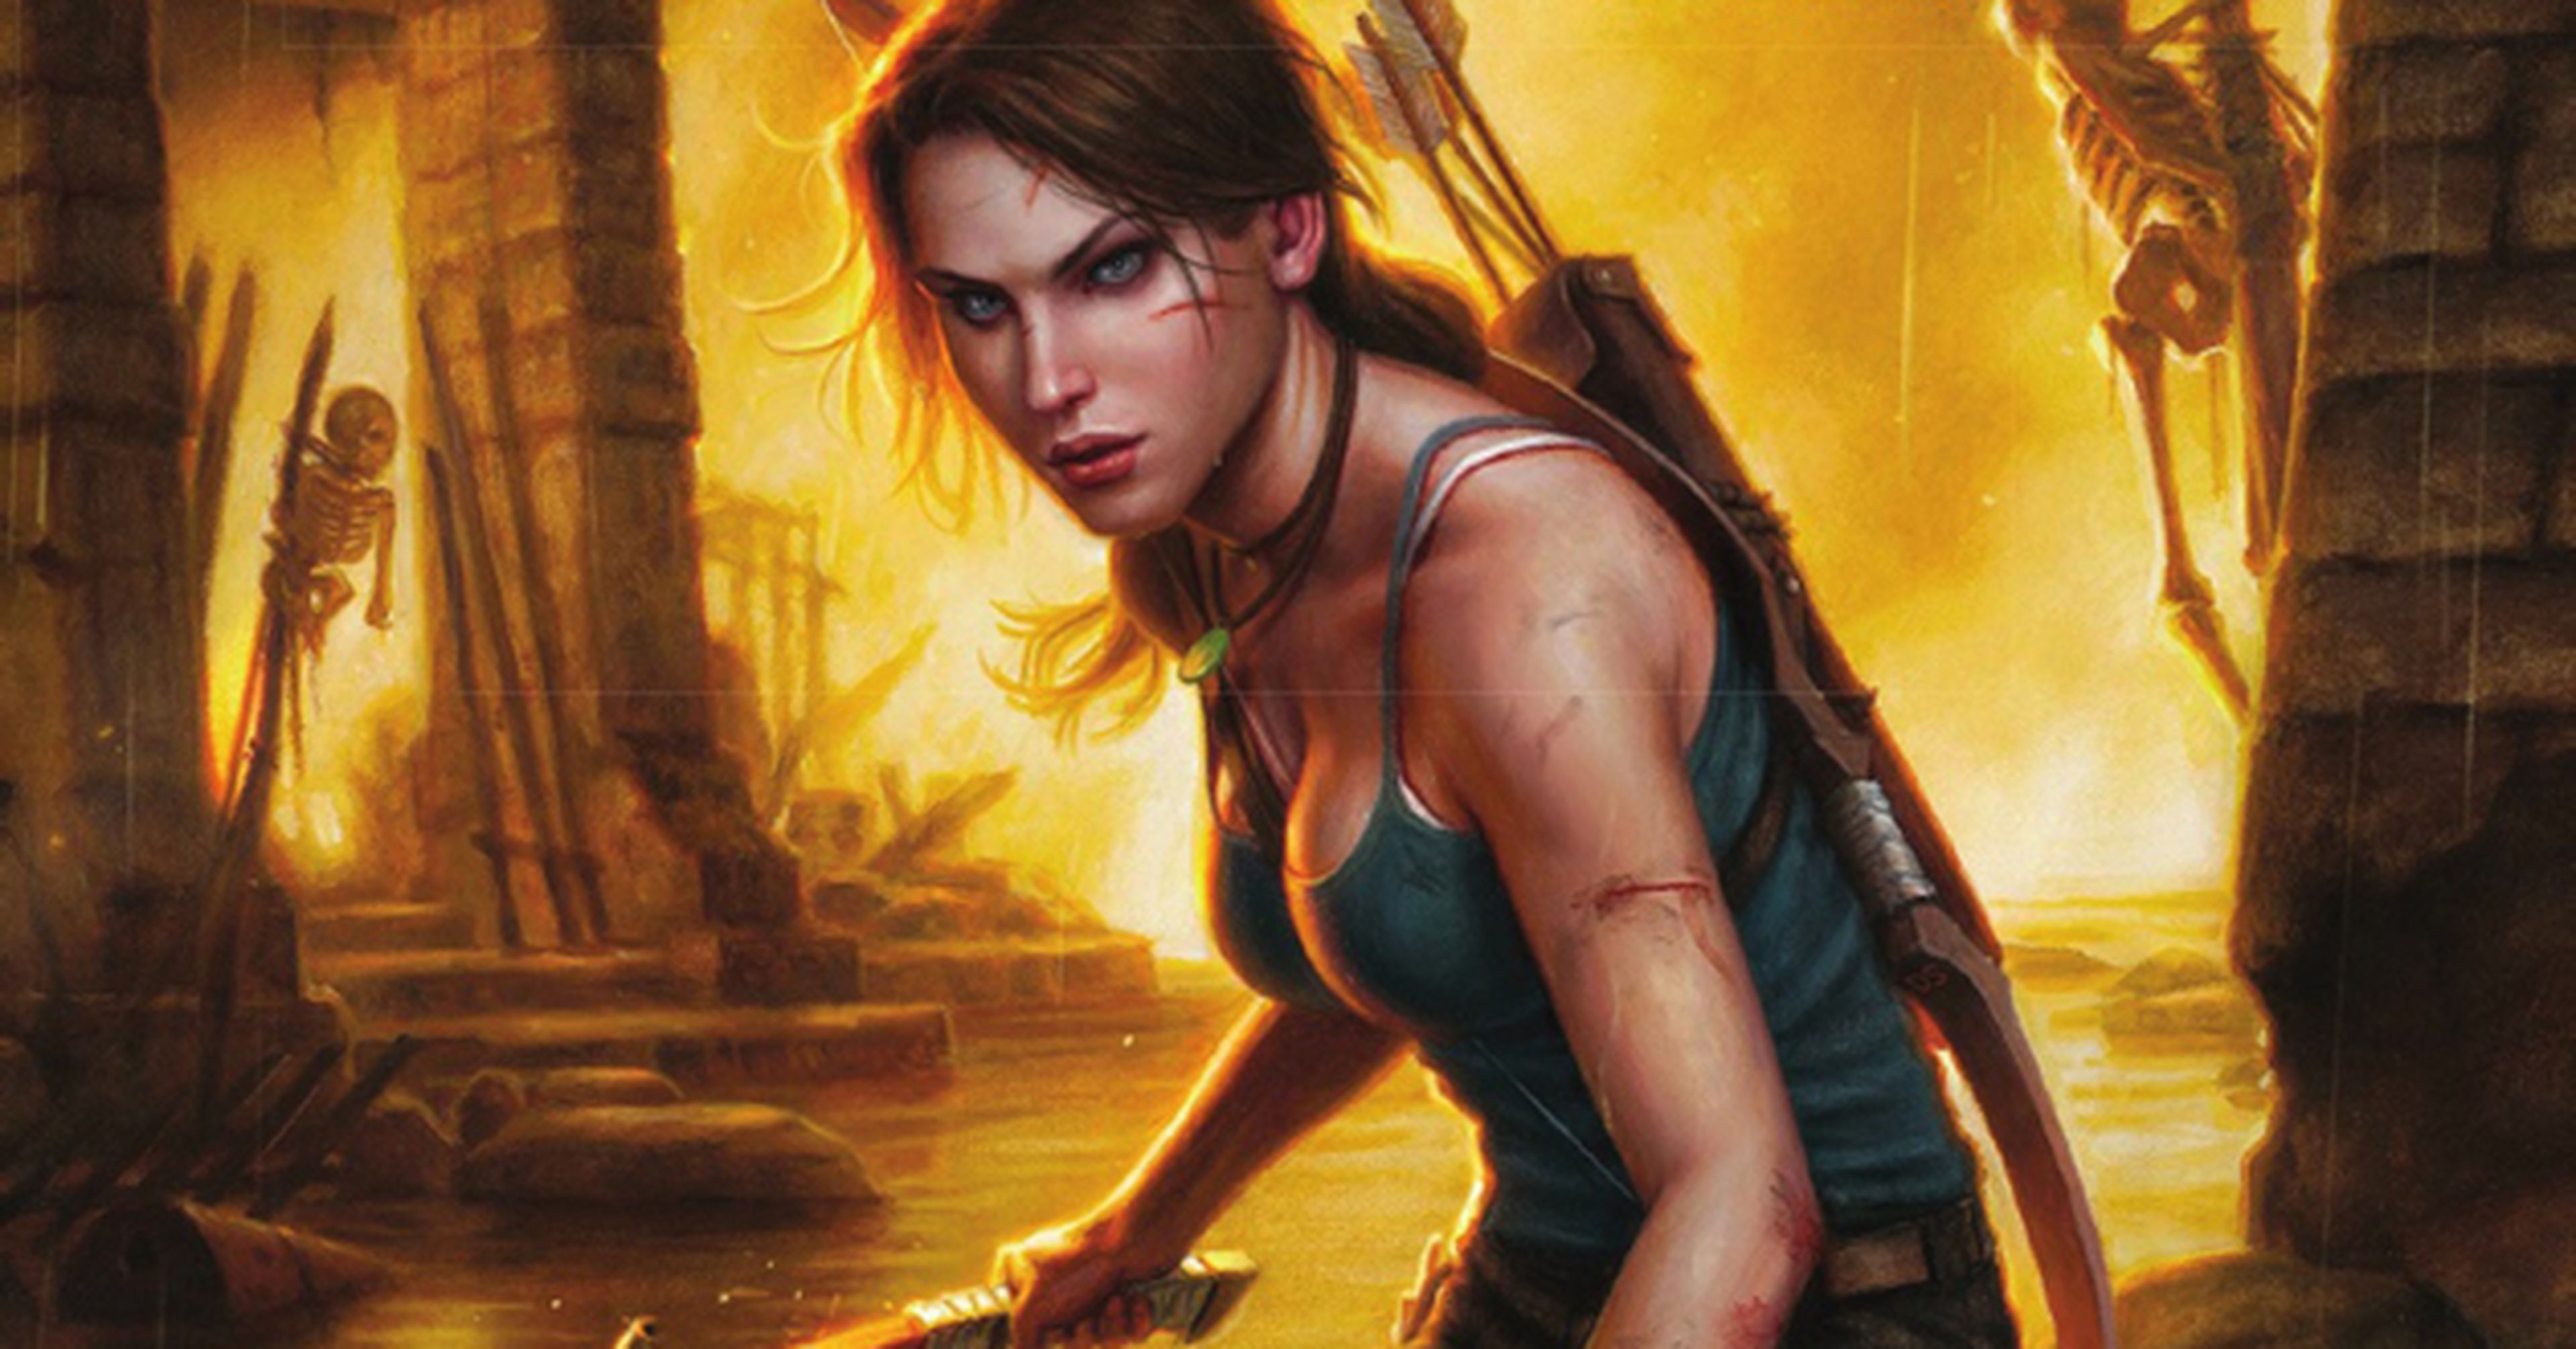 Tomb Raider - Reseña del cómic del videojuego